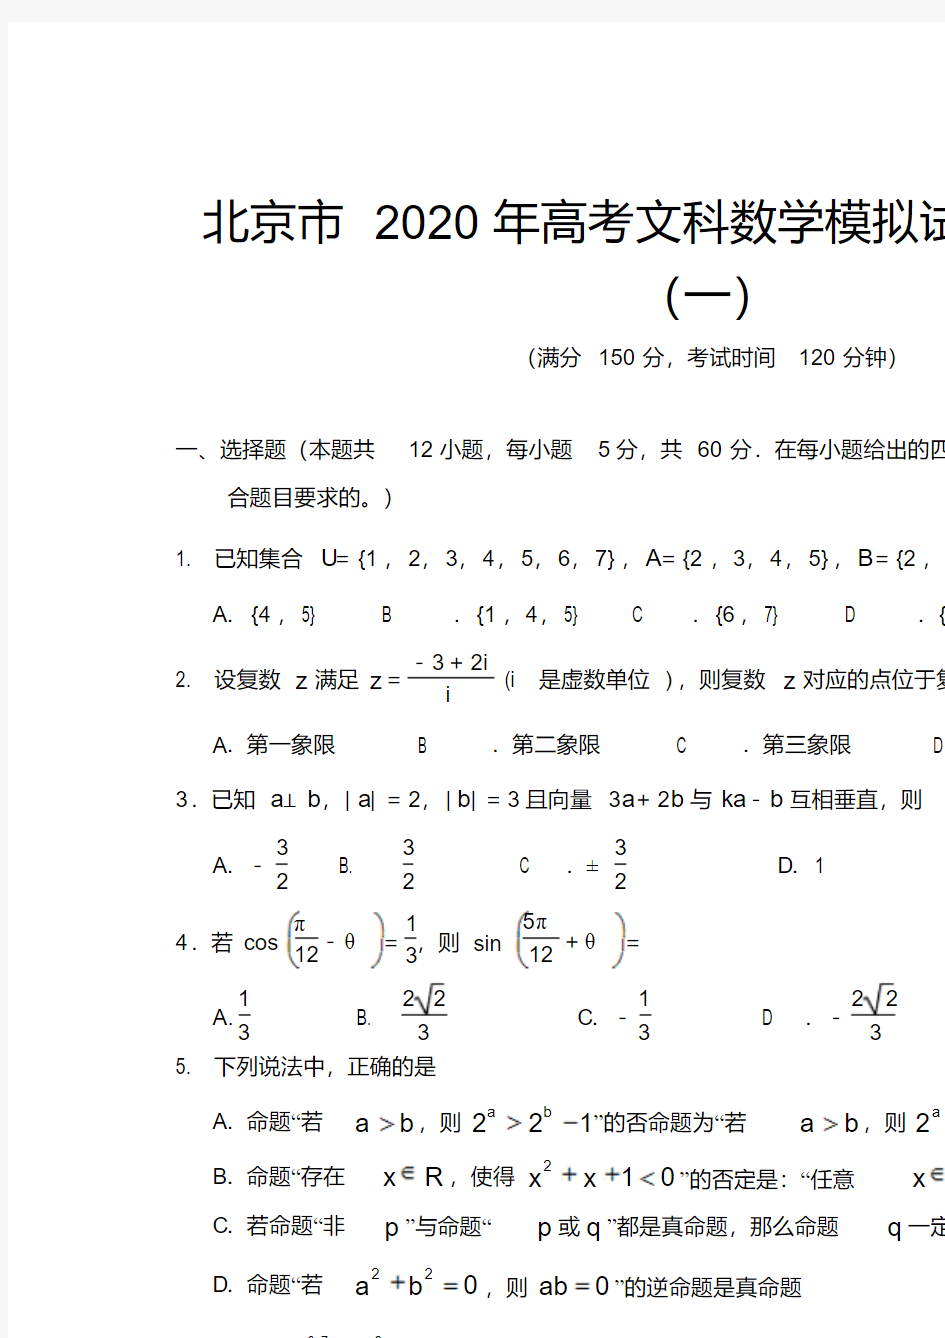 北京市2020年高考文科数学模拟试题及答案(一)